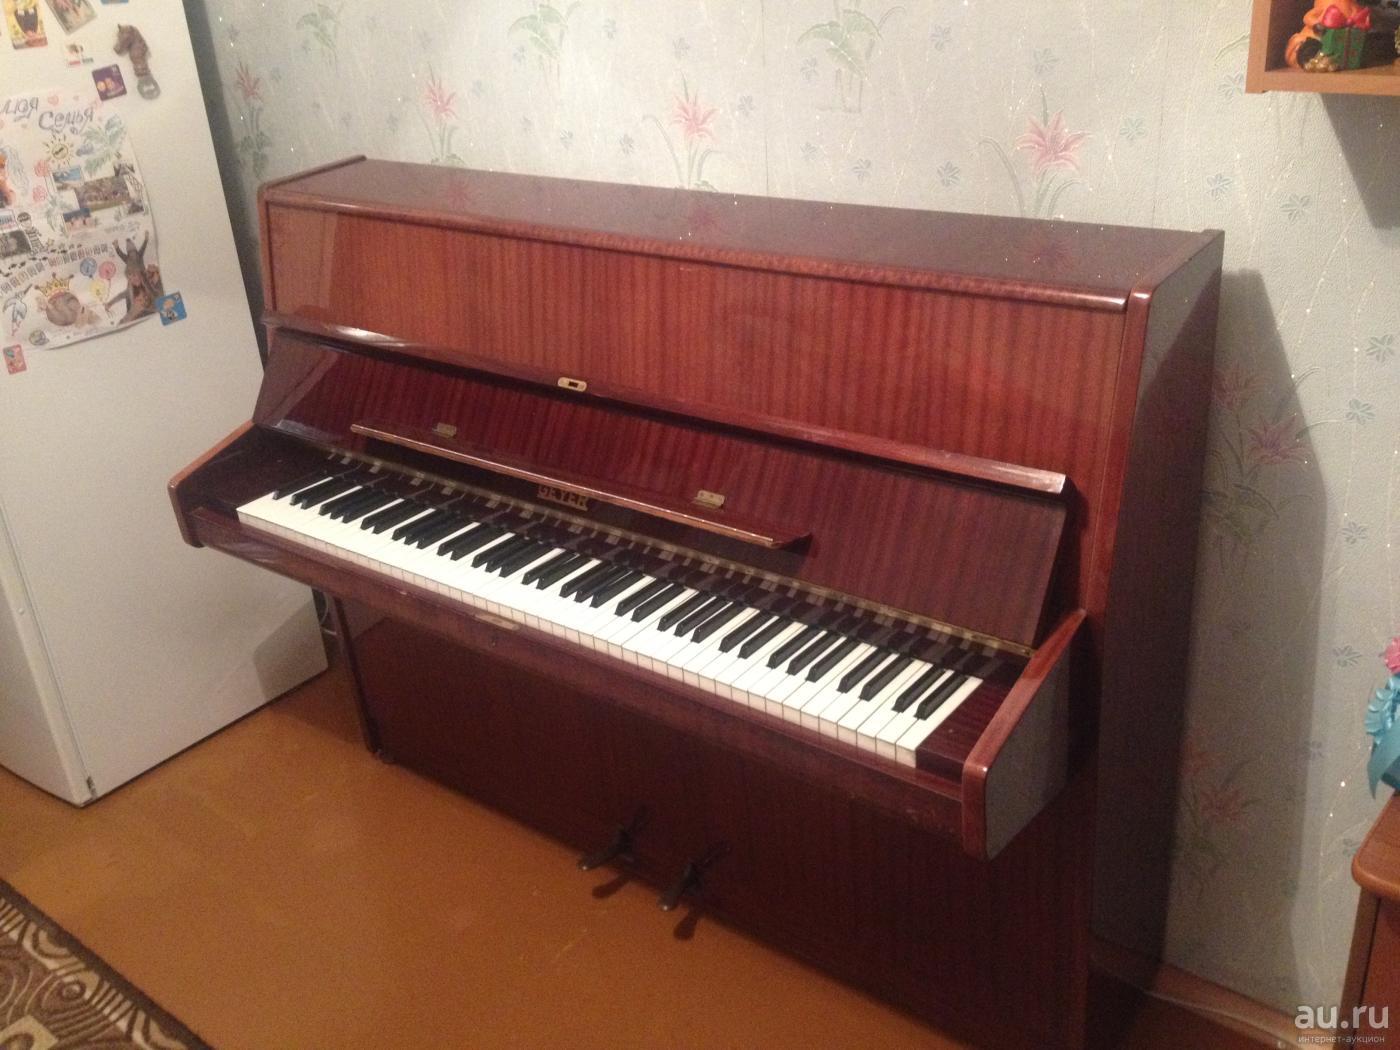 Авито куплю пианино б у. Пианино б/у. Подержанное пианино. Недорогое пианино синтезатор. Отечественное пианино.